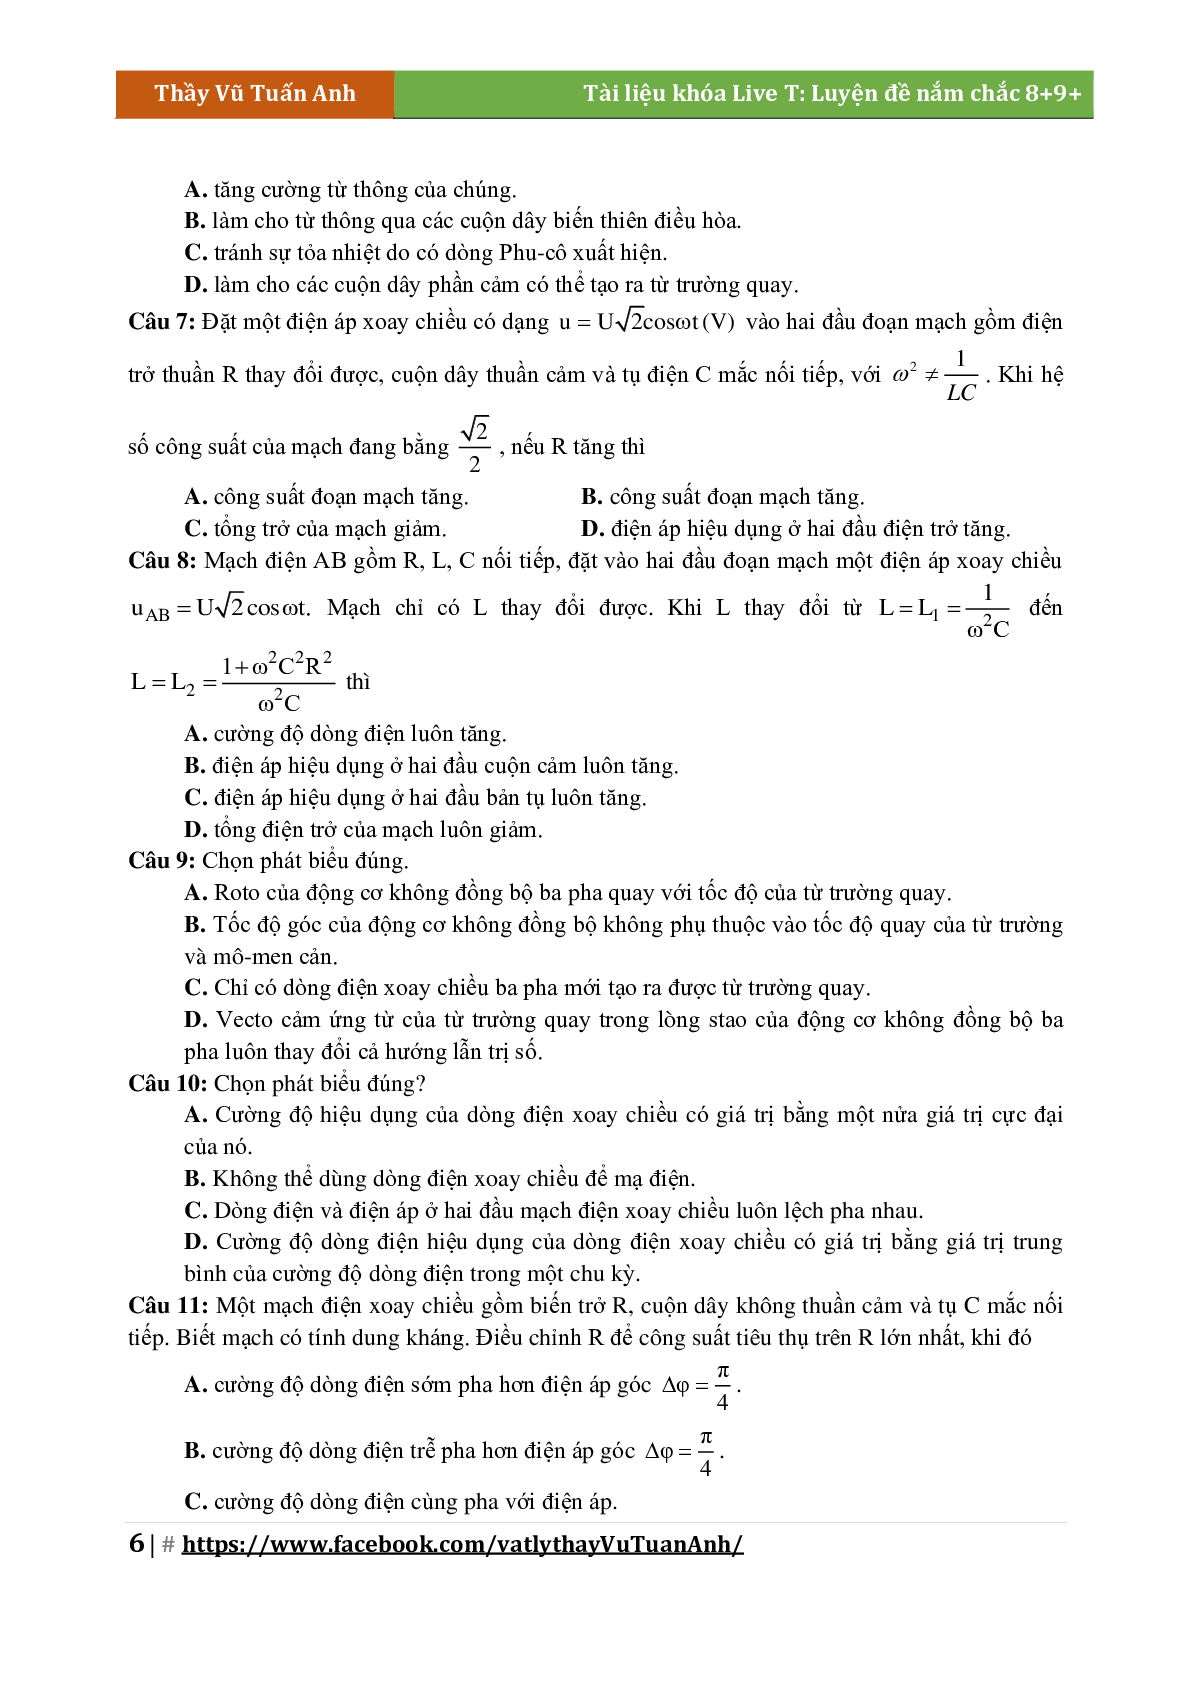 Lý Thuyết Chương Điện Xoay Chiều Môn Vật Lý Lớp 12 (trang 6)